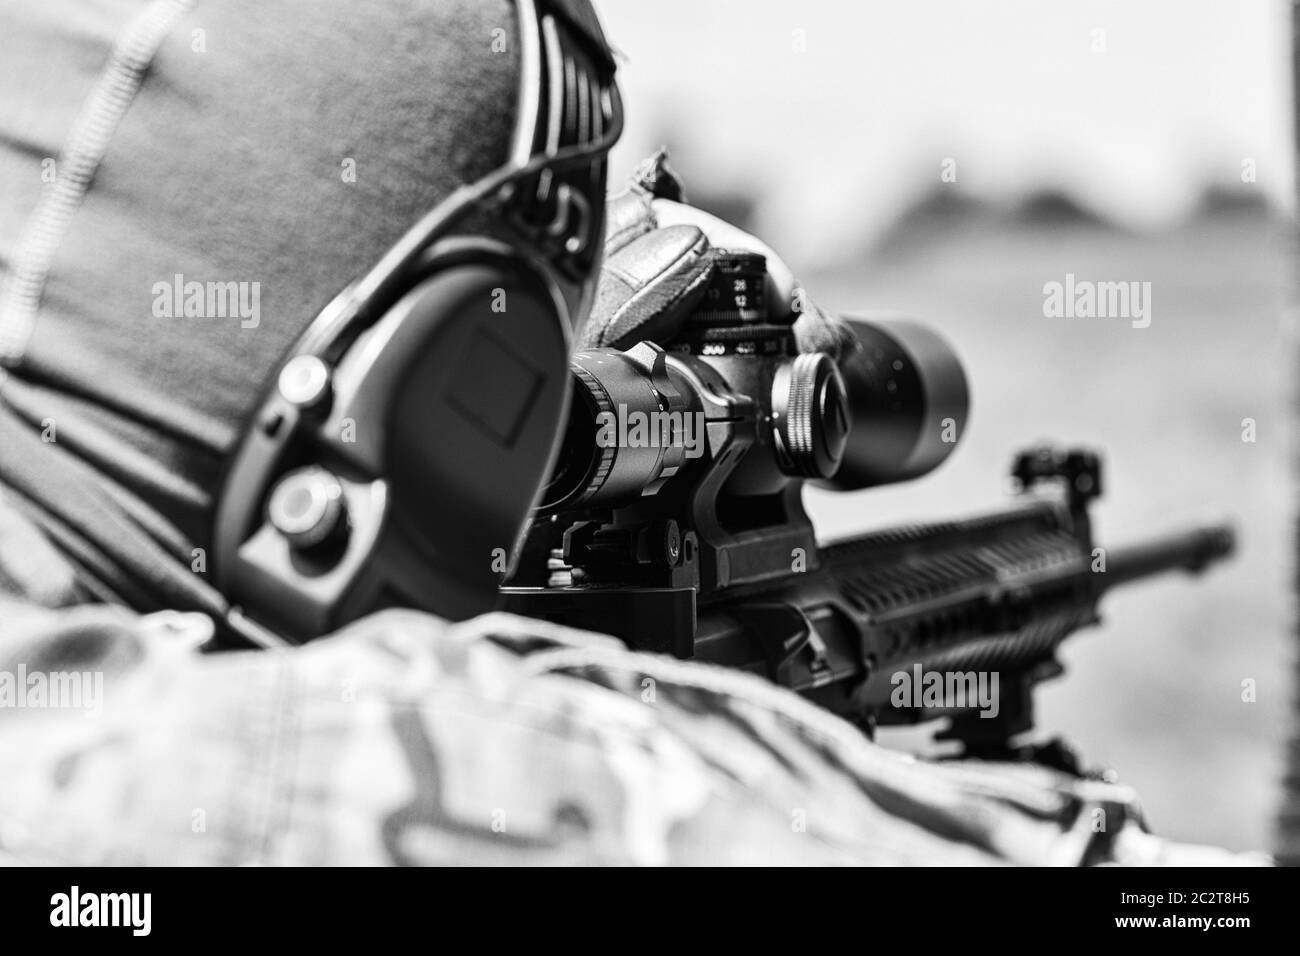 Militaire en uniforme de camouflage avec fusil. Fusil de précision équipé. Banque D'Images